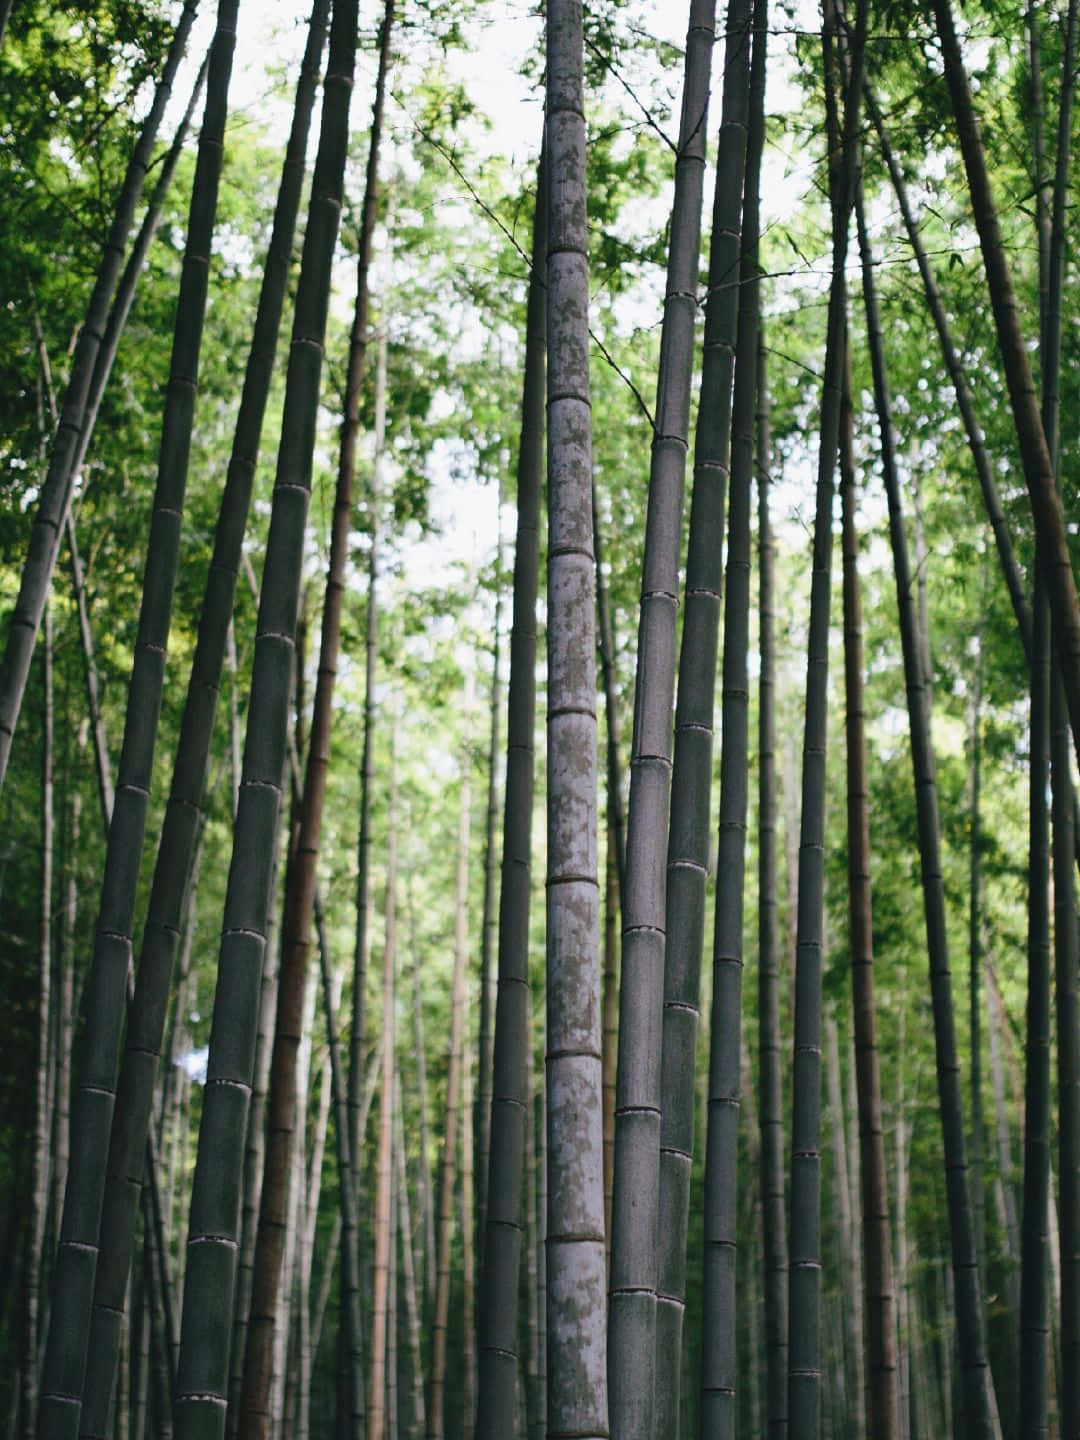 Fundode Tela De Bambu Estético Com Árvores De Bambu Em 1440p.